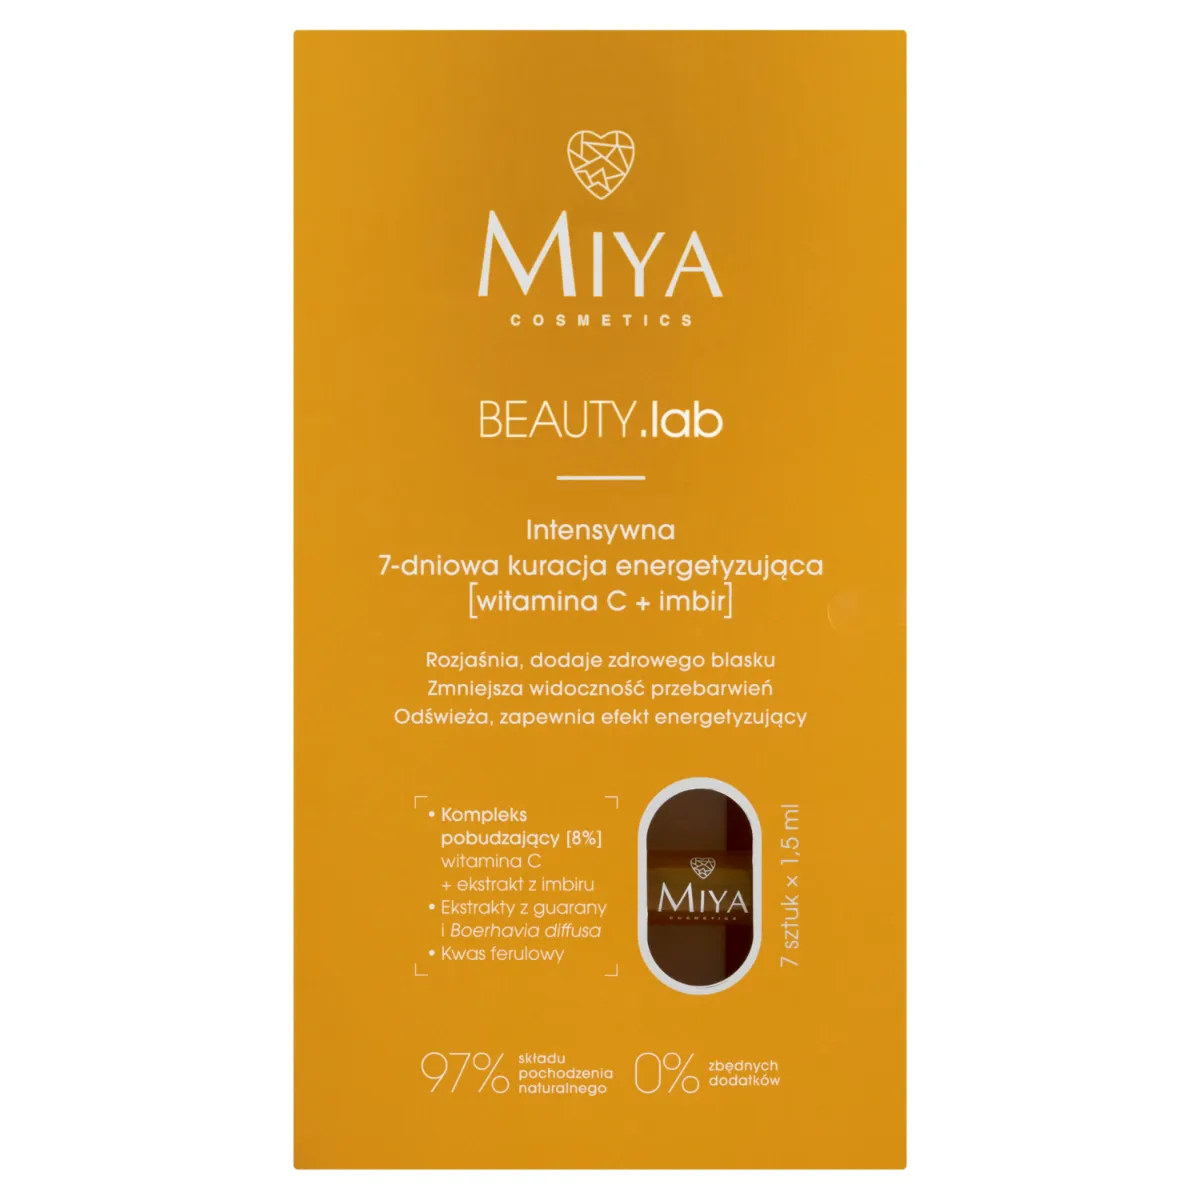 Miya Cosmetics Beauty.lab 7-dniowa kuracja energetyzująca, 7 x 1,5 ml